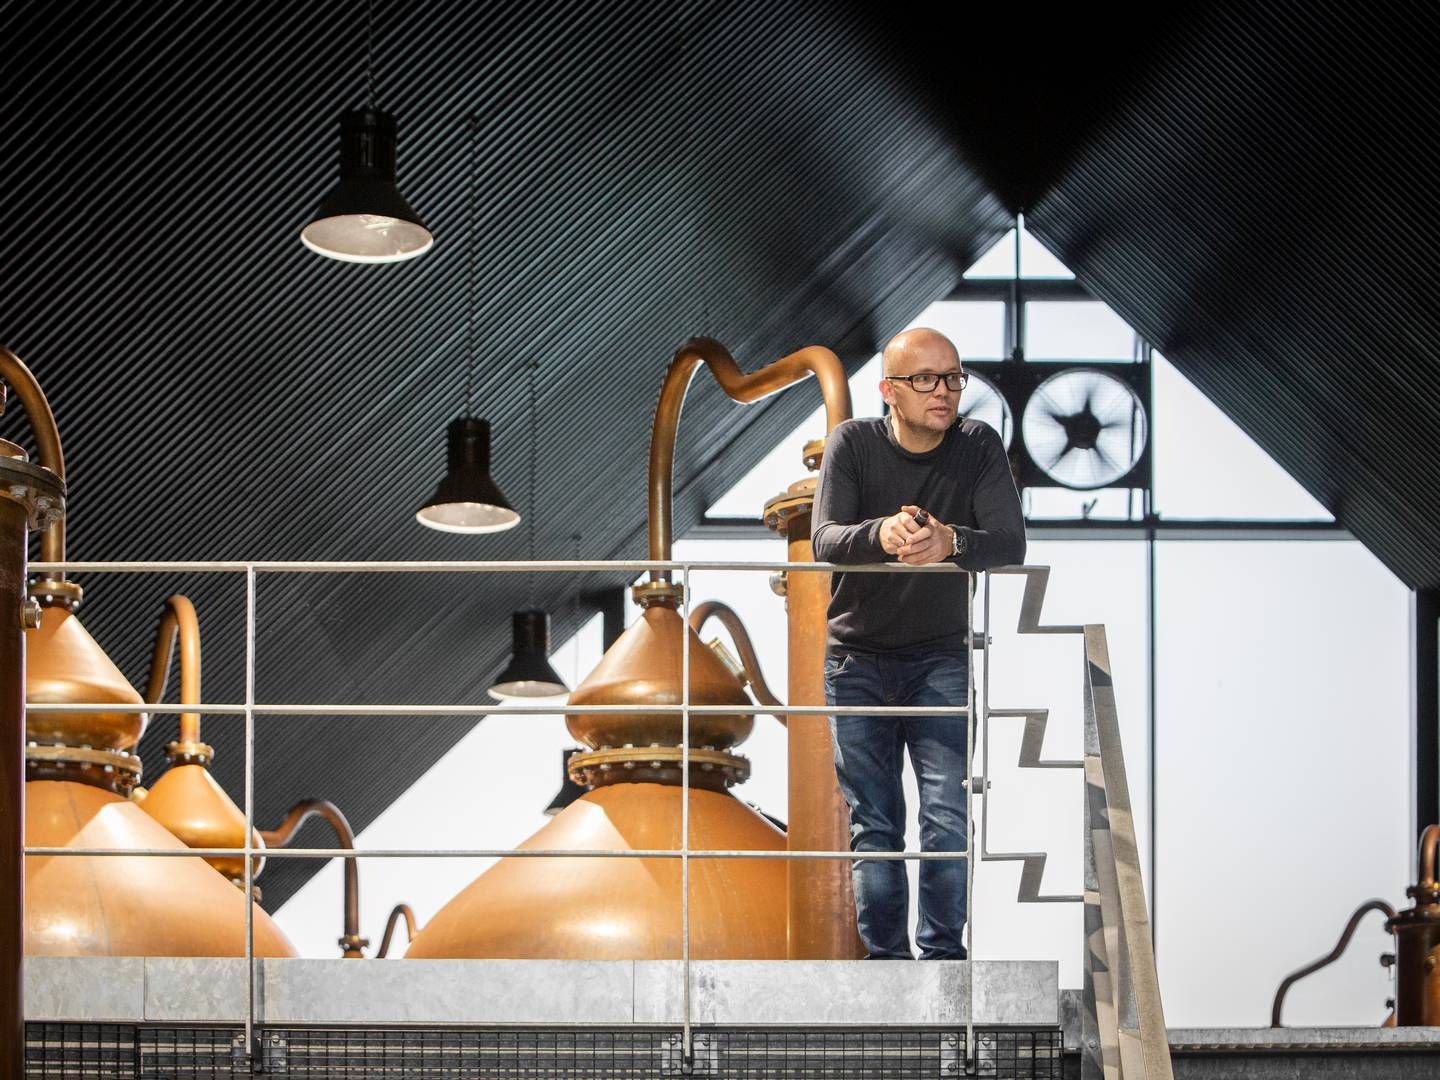 "Det koster jo noget at sadle om og finde nye løsninger," udtaler Lasse Vesterby, der er adm. direktør i Stauning Whisky. | Foto: Pr/stauning Whisky